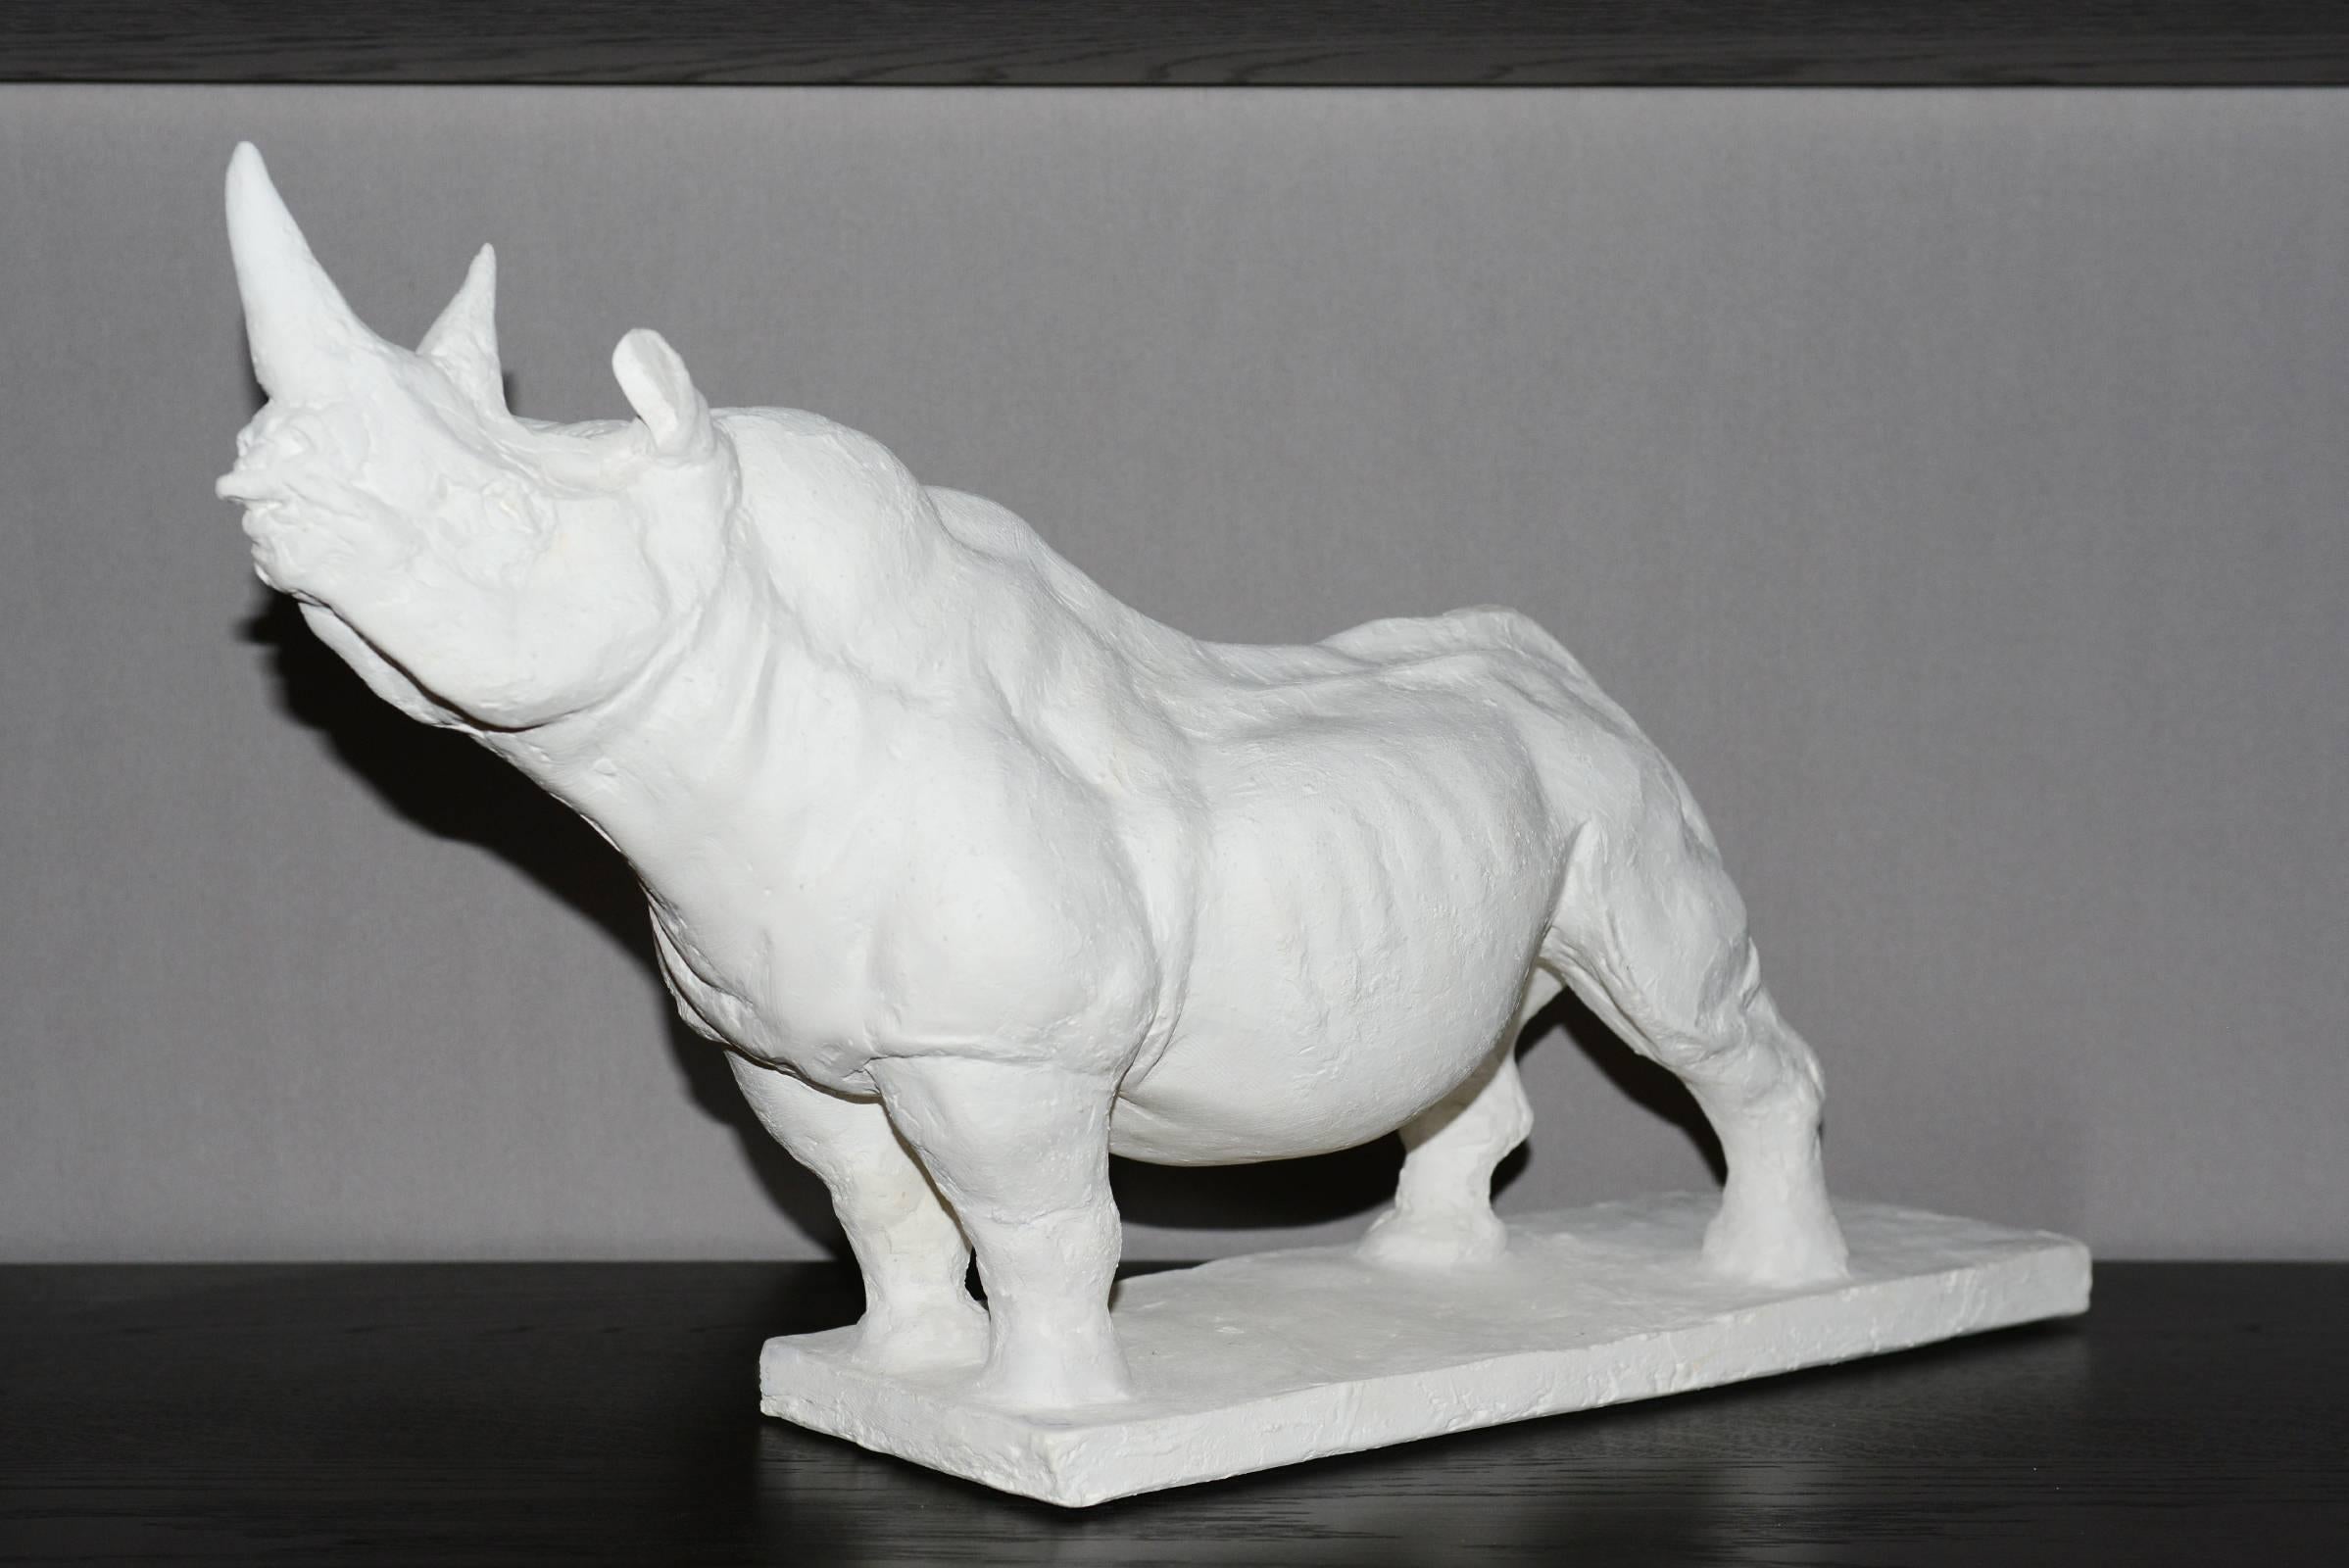 Sculpture Rhinocéros en plâtre.
Edition limitée et numérotée 25/60.
Fabriqué en France par J.B Vandame en 2015.

 